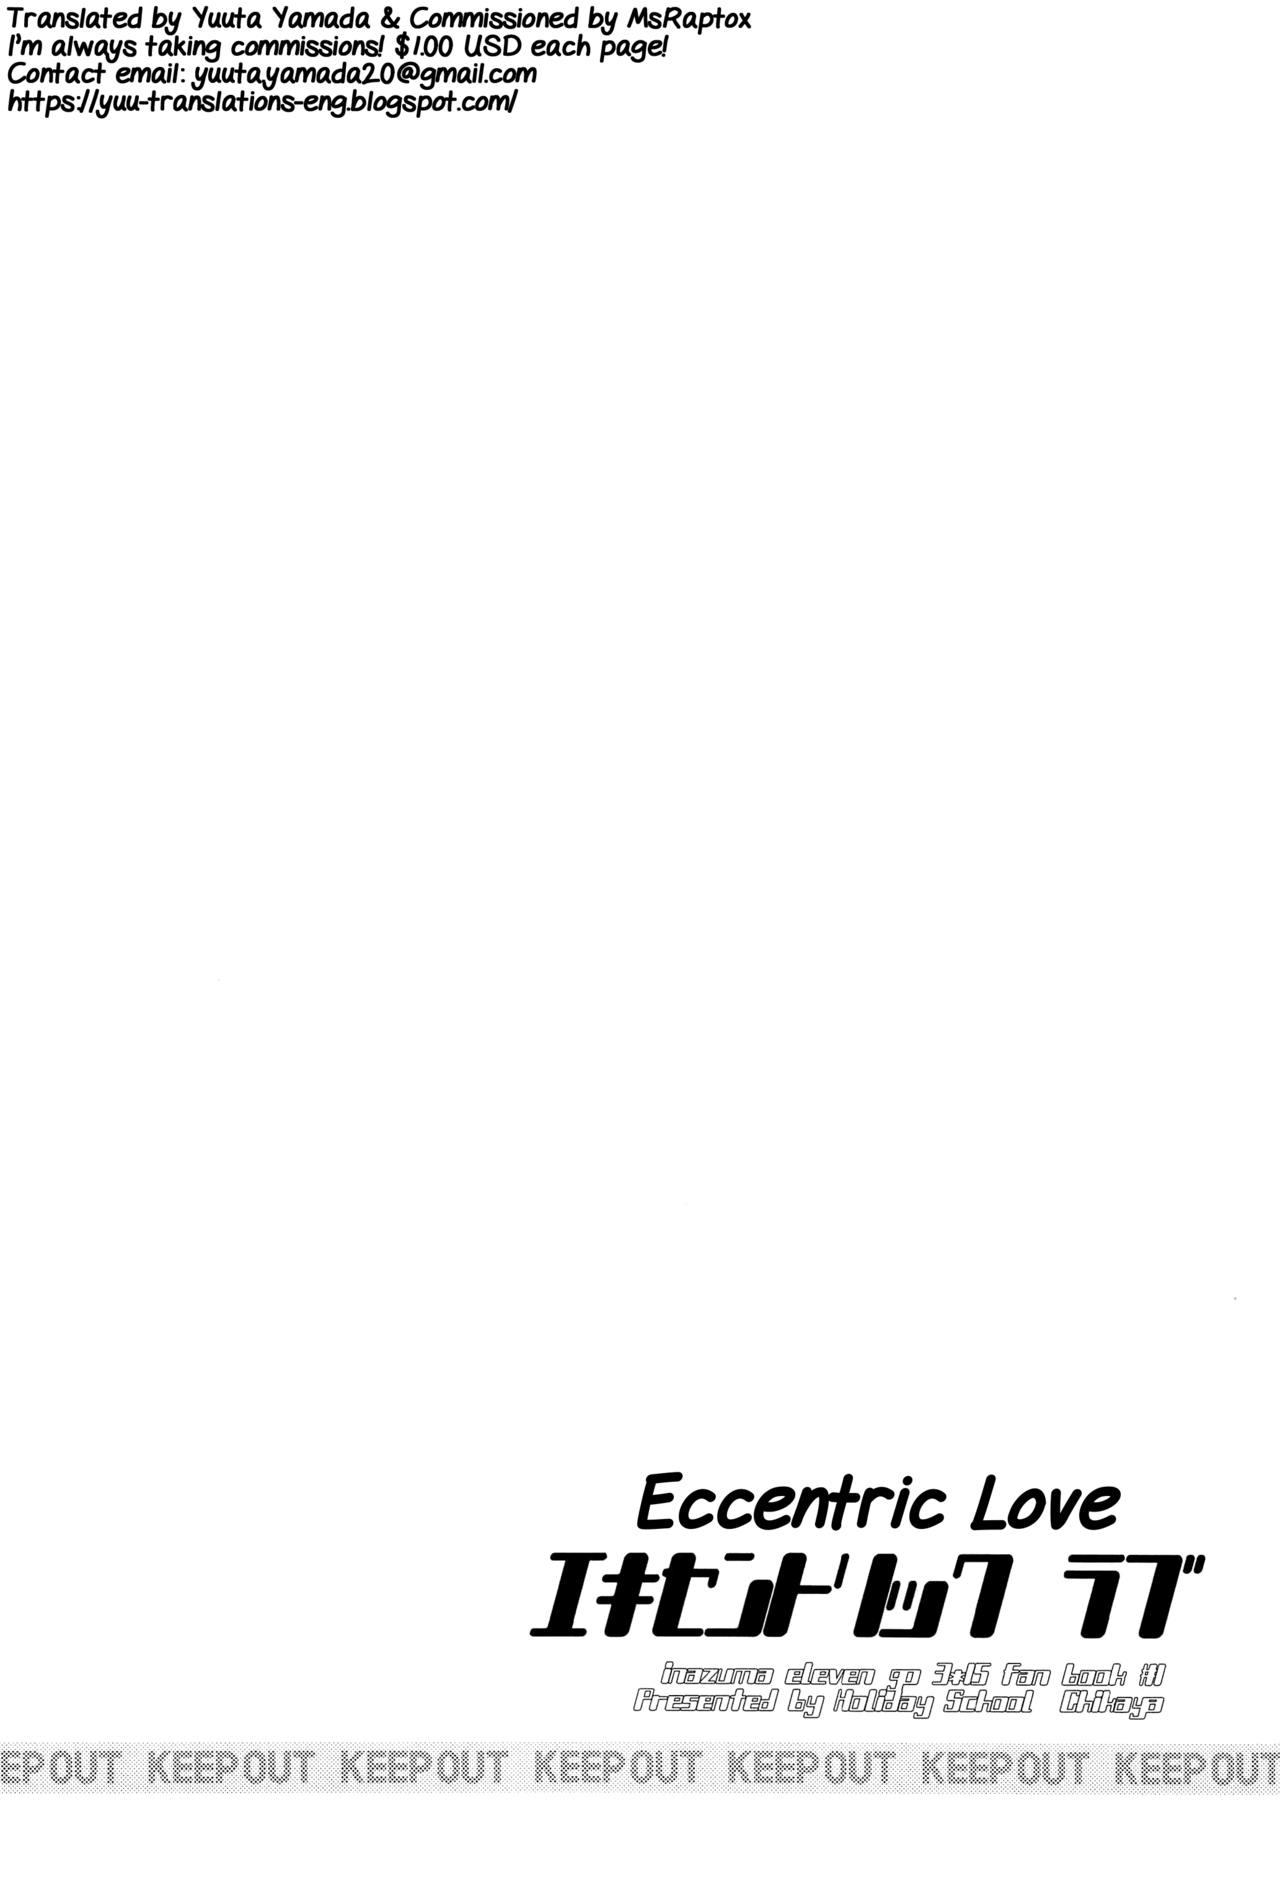 Eccentric Love 2